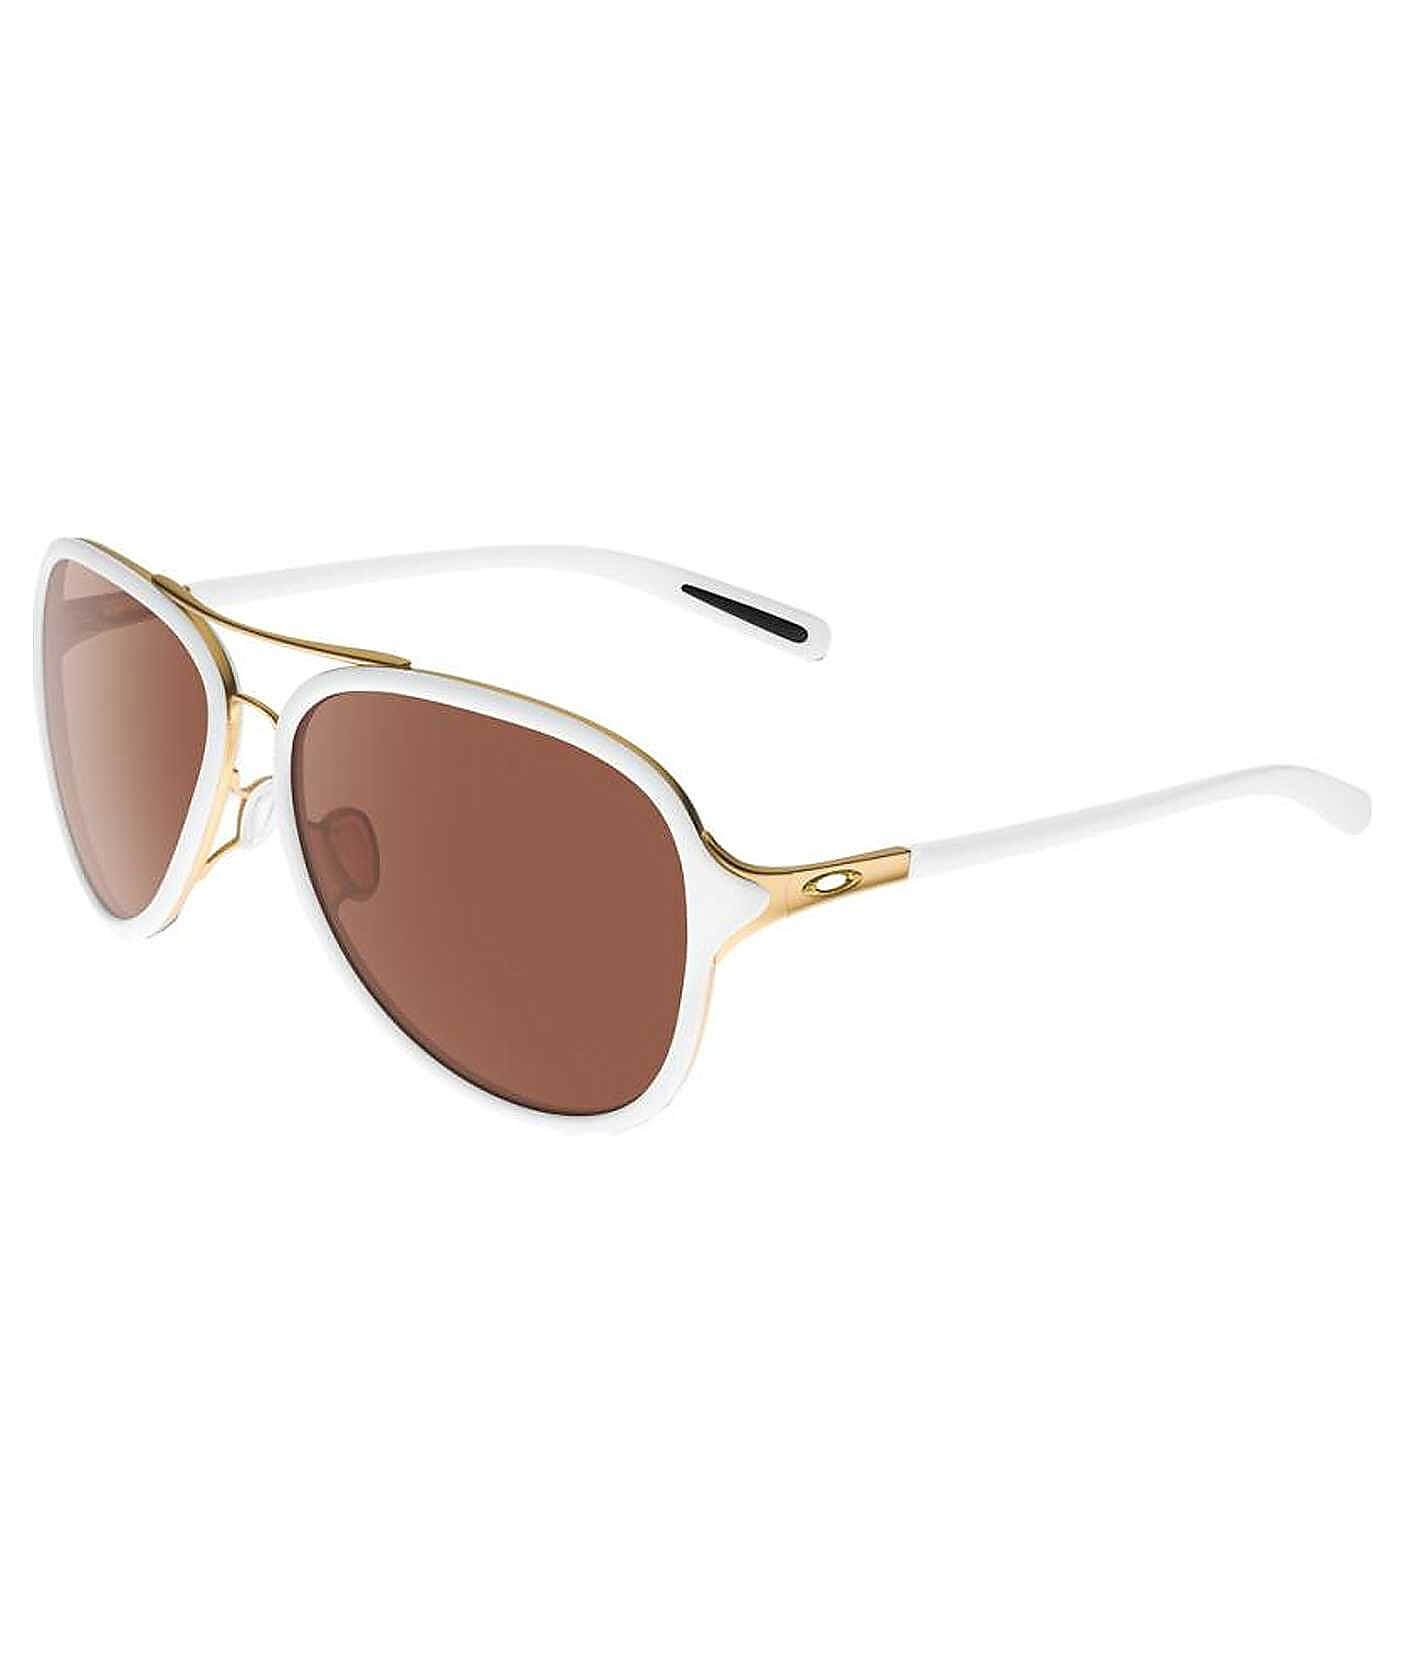 Oakley Kickback Sunglasses - Women's 